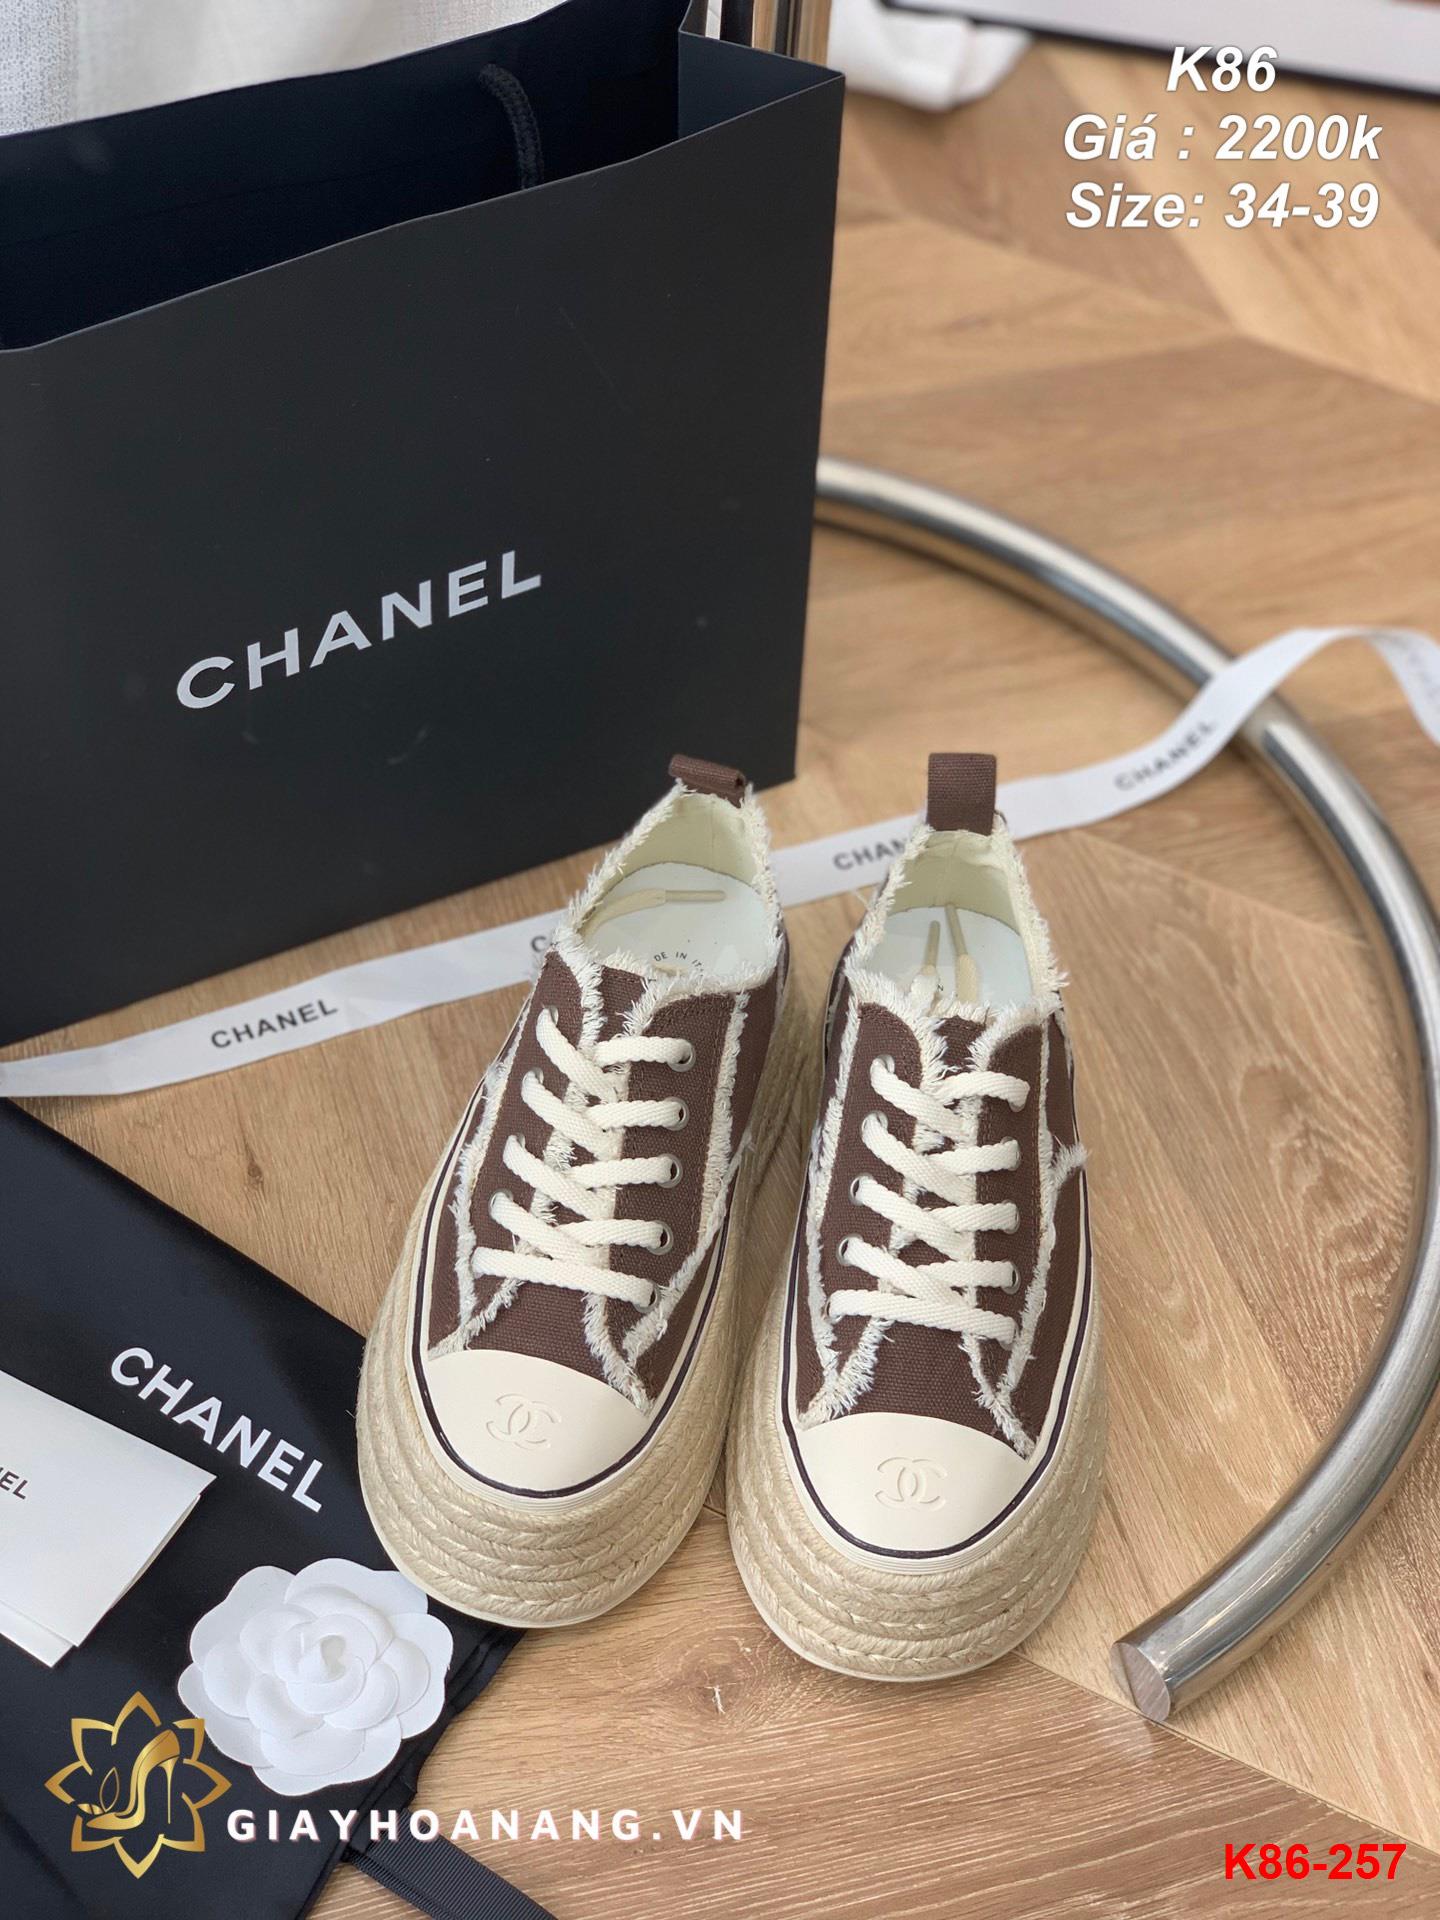 K86-257 Chanel giày thể thao siêu cấp